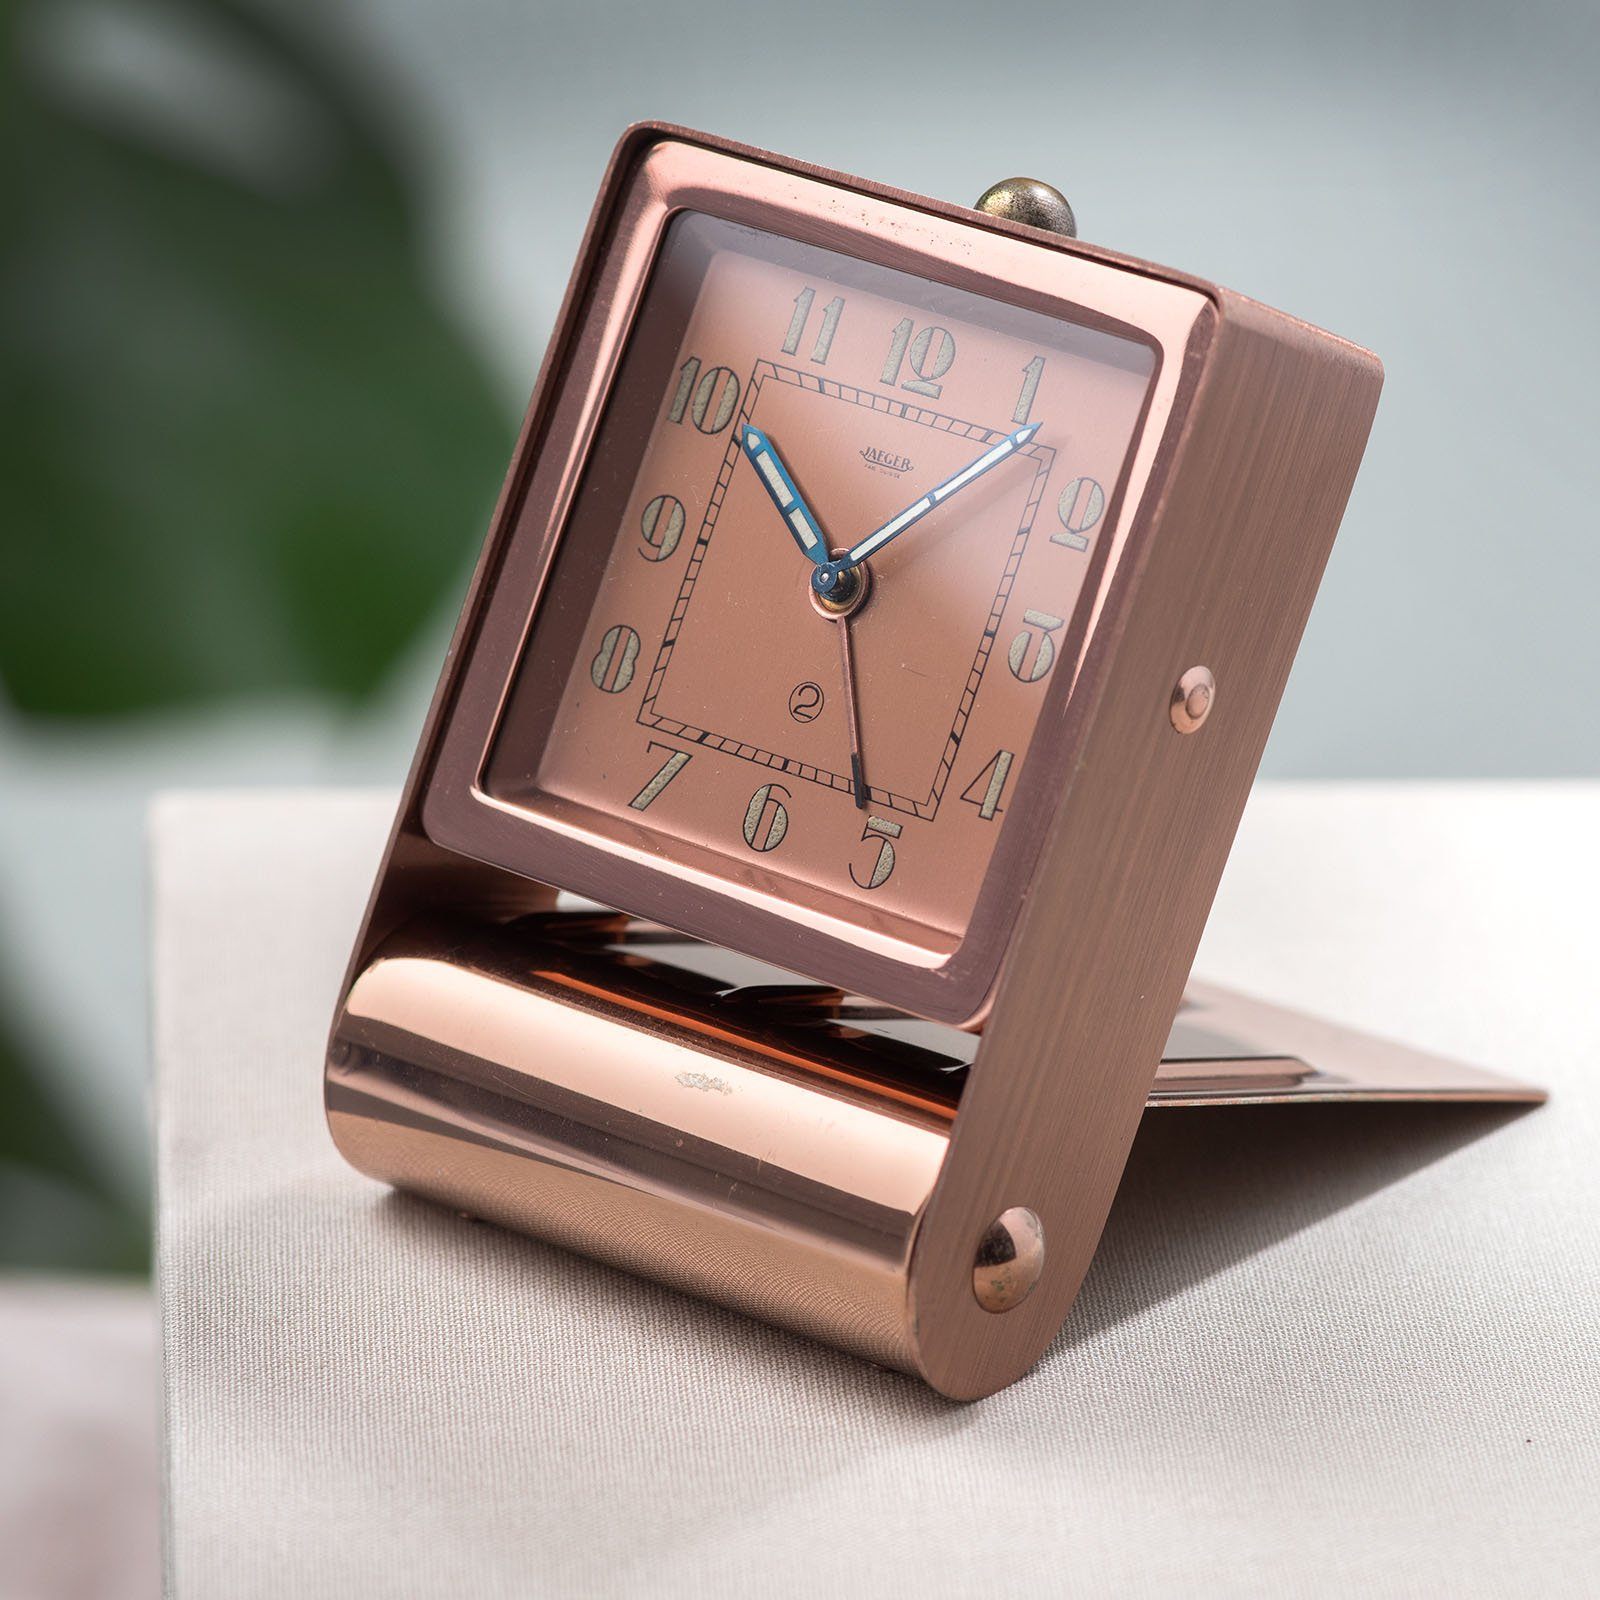 Art Deco style desk clock by Jaeger Le Coultre